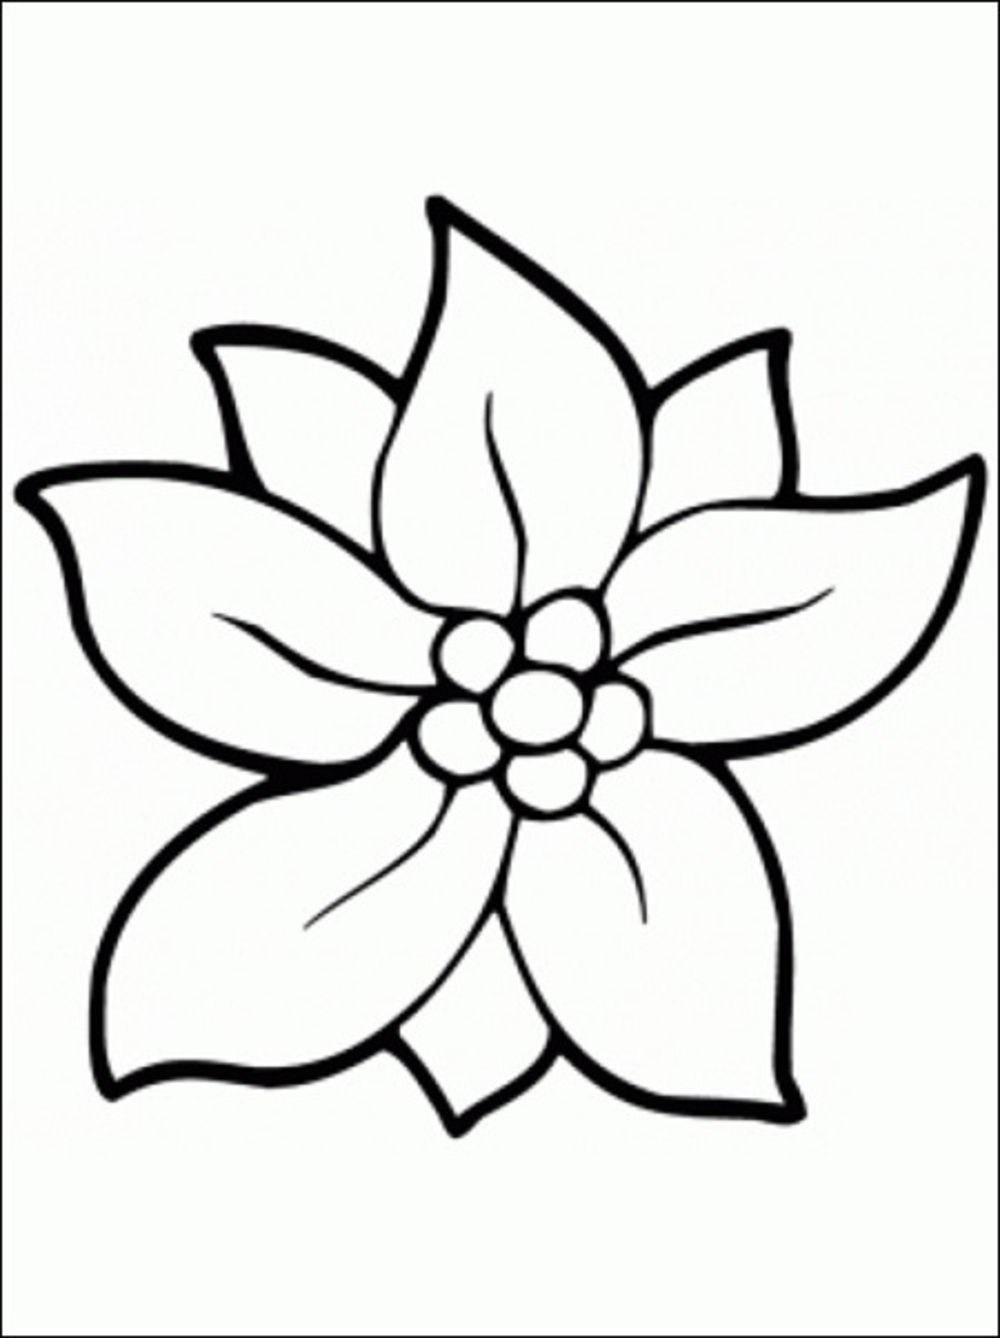 Tranh tô màu đơn giản nhất về hoa